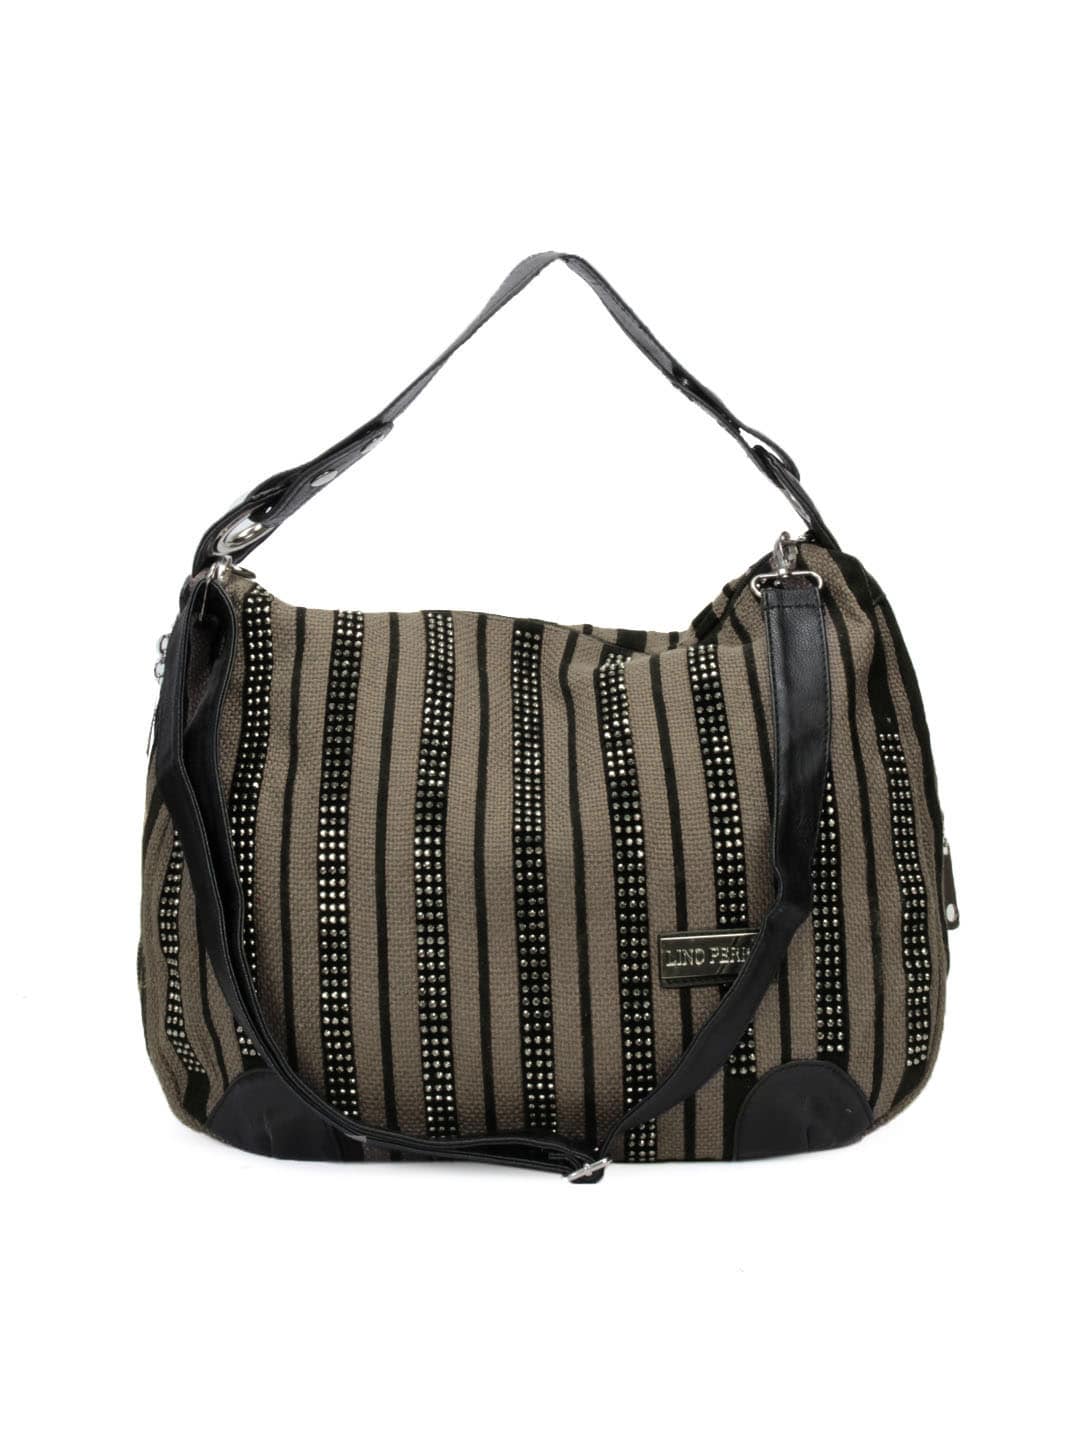 Lino Perros Women Brown Handbag